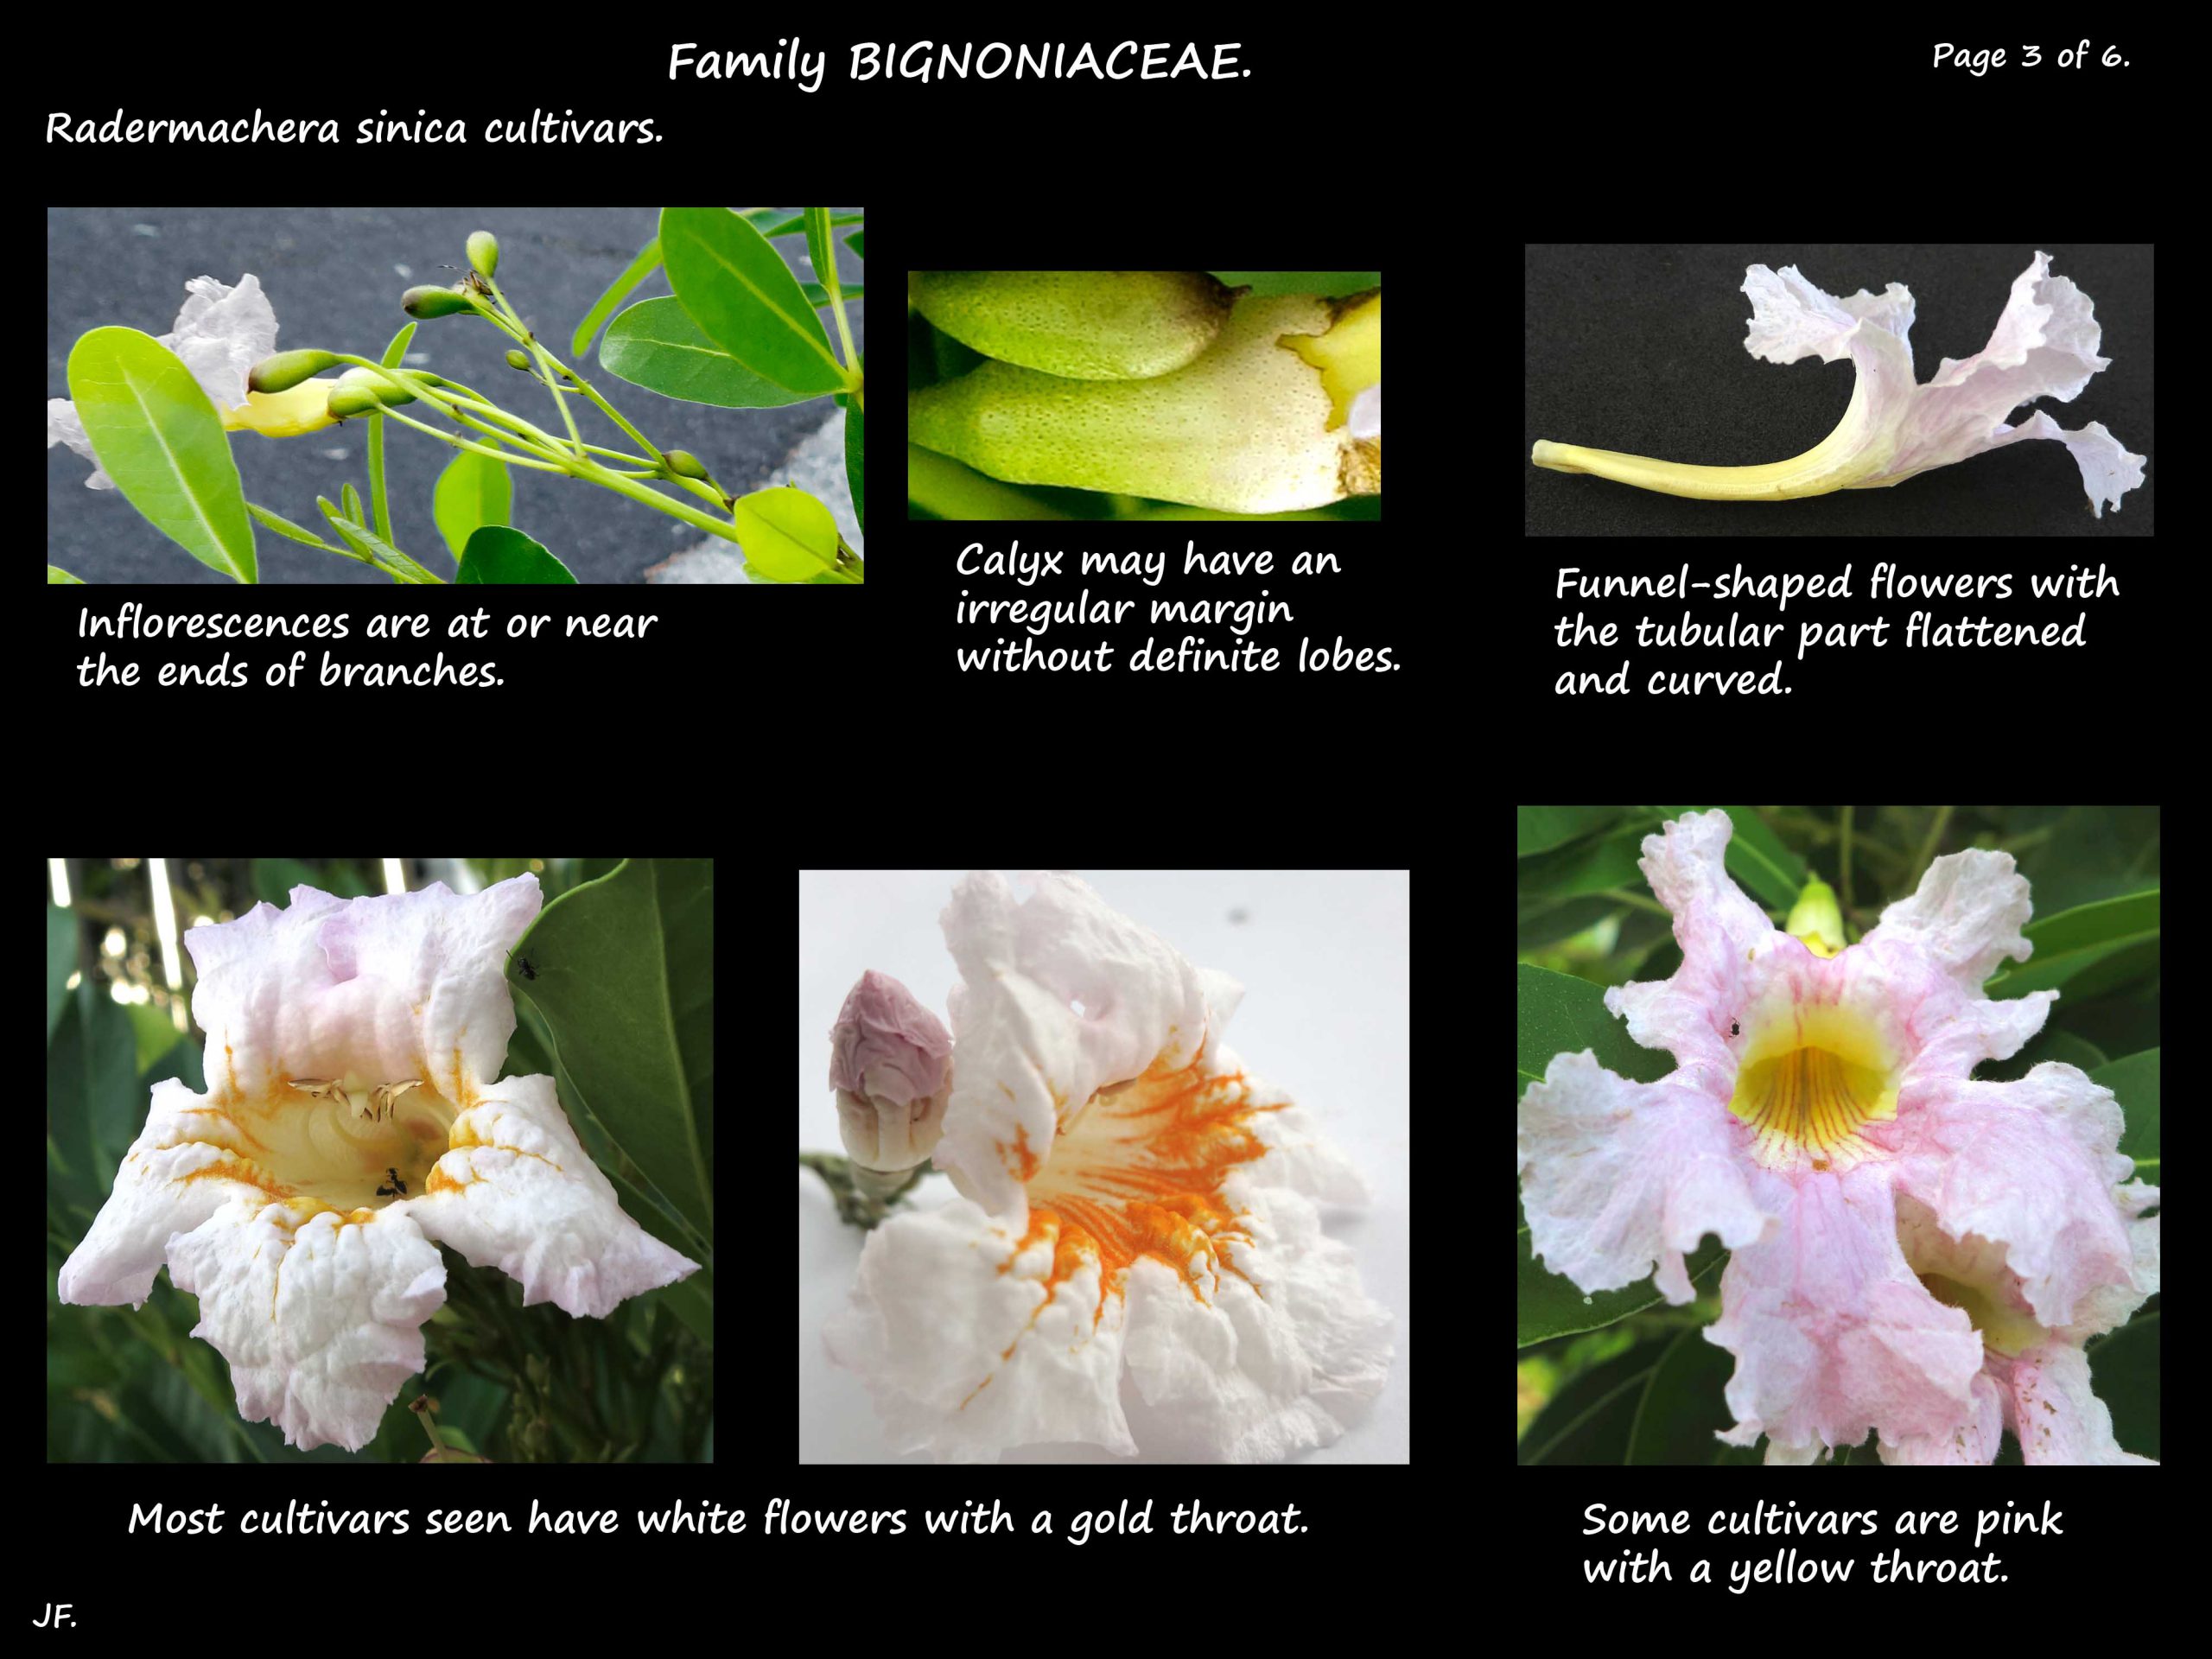 3 Radermachera cultivar flower